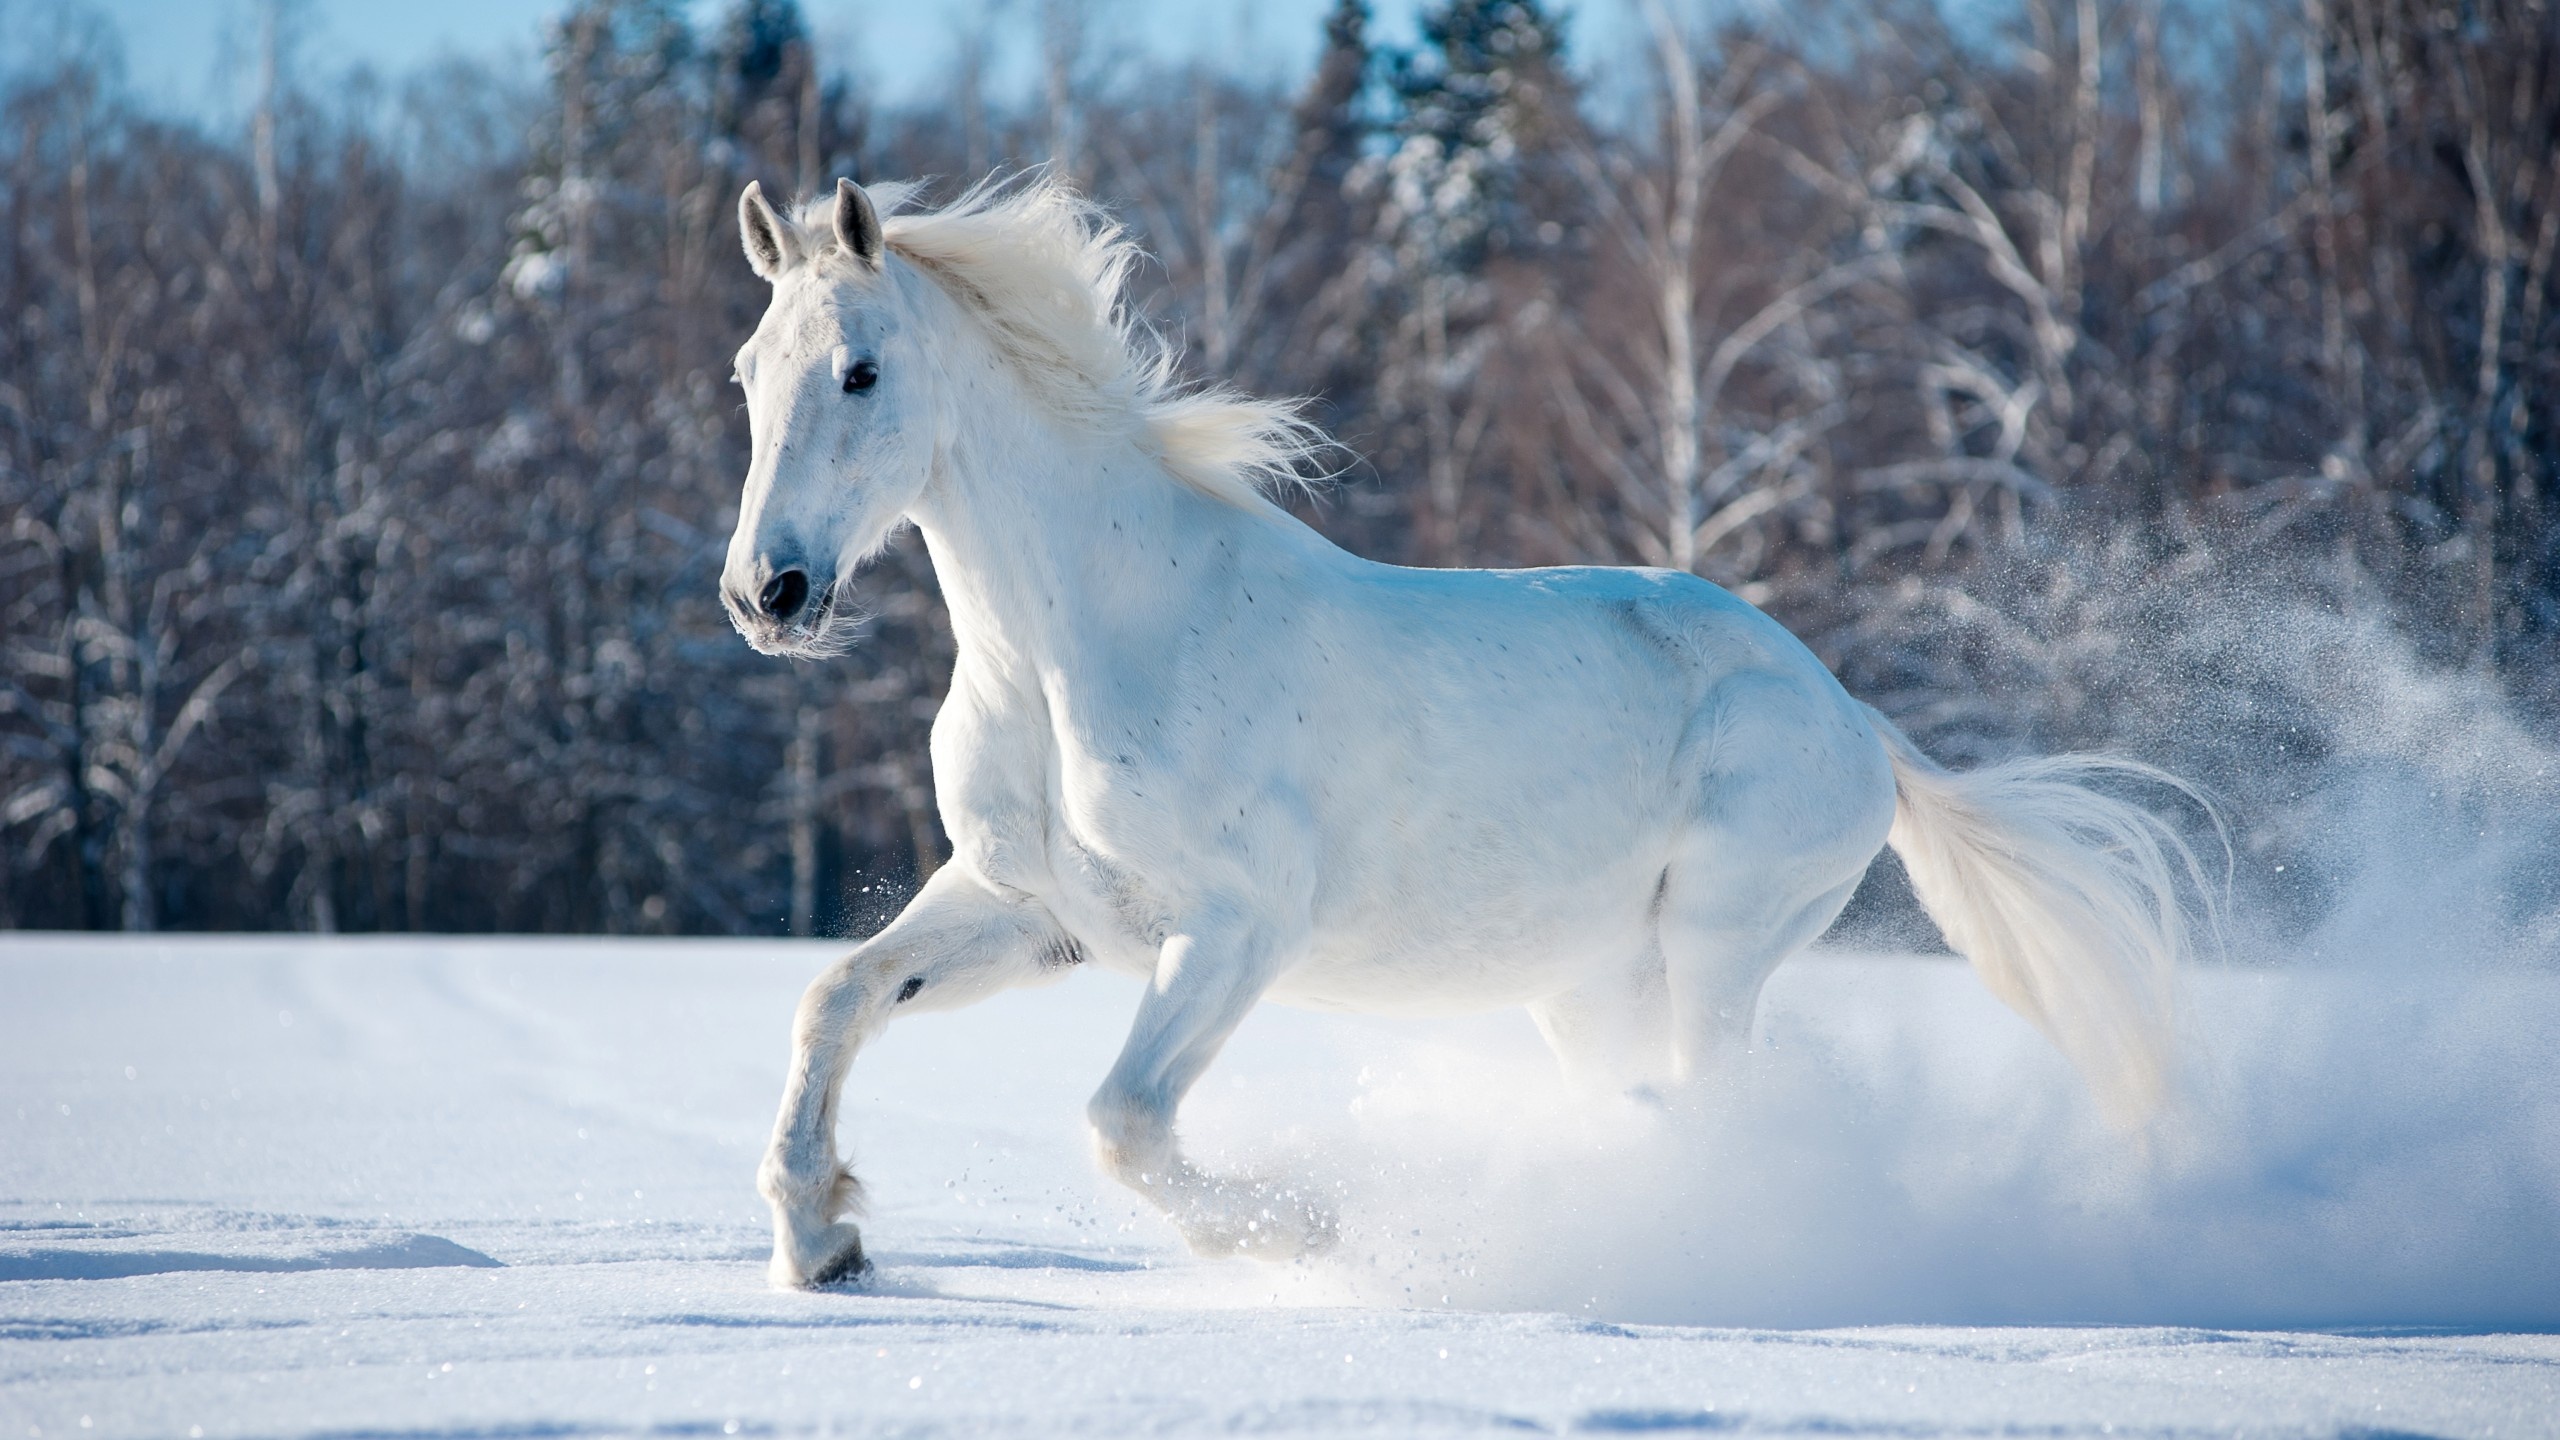 Horse delight, Snowy wonderland, Winter's grace, Majestic beauty, 2560x1440 HD Desktop